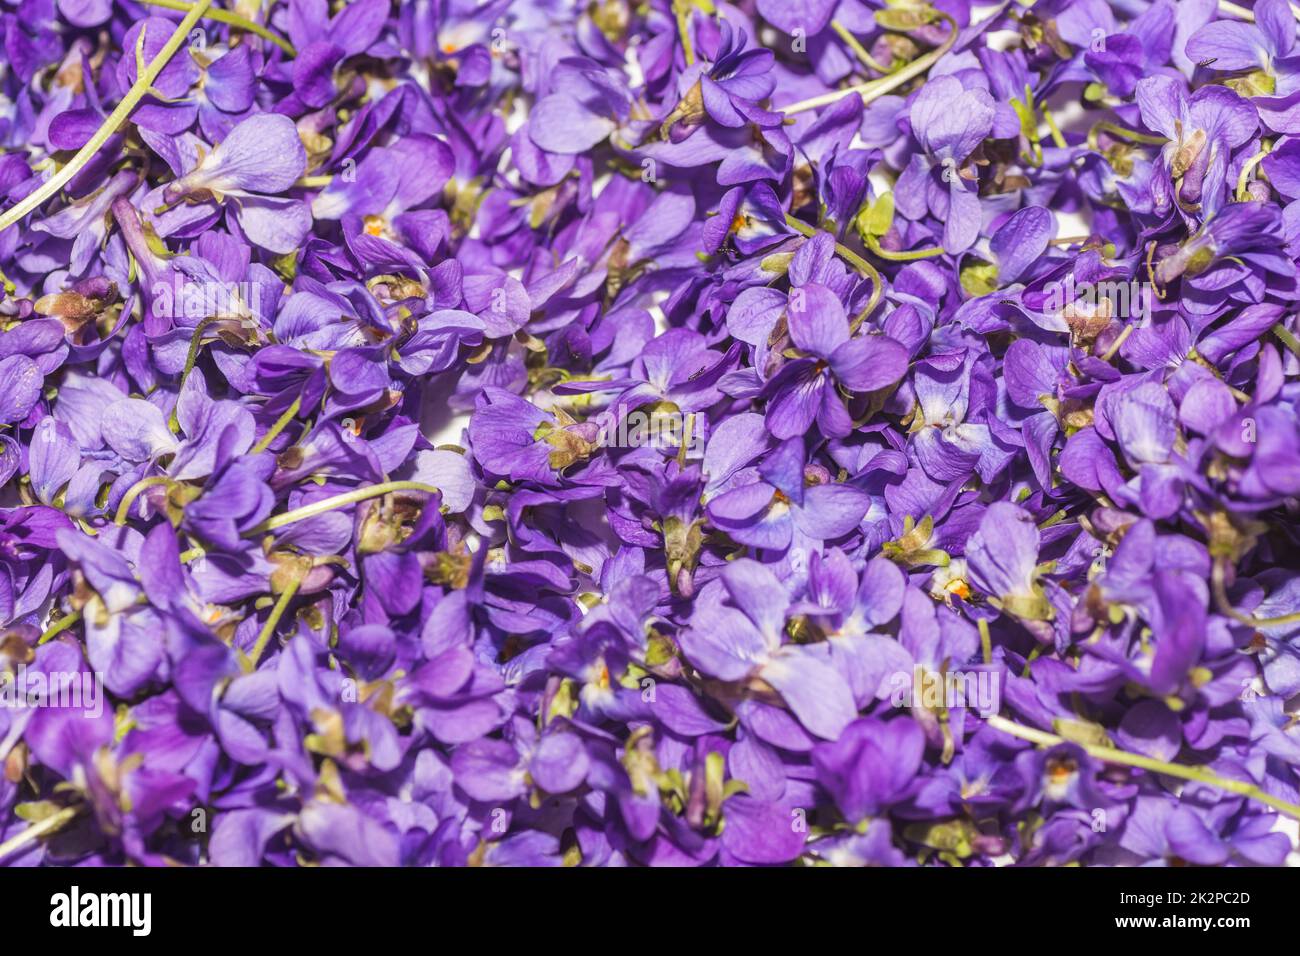 beaucoup de fleurs de lilas fraîches recueillies pour le thé Banque D'Images